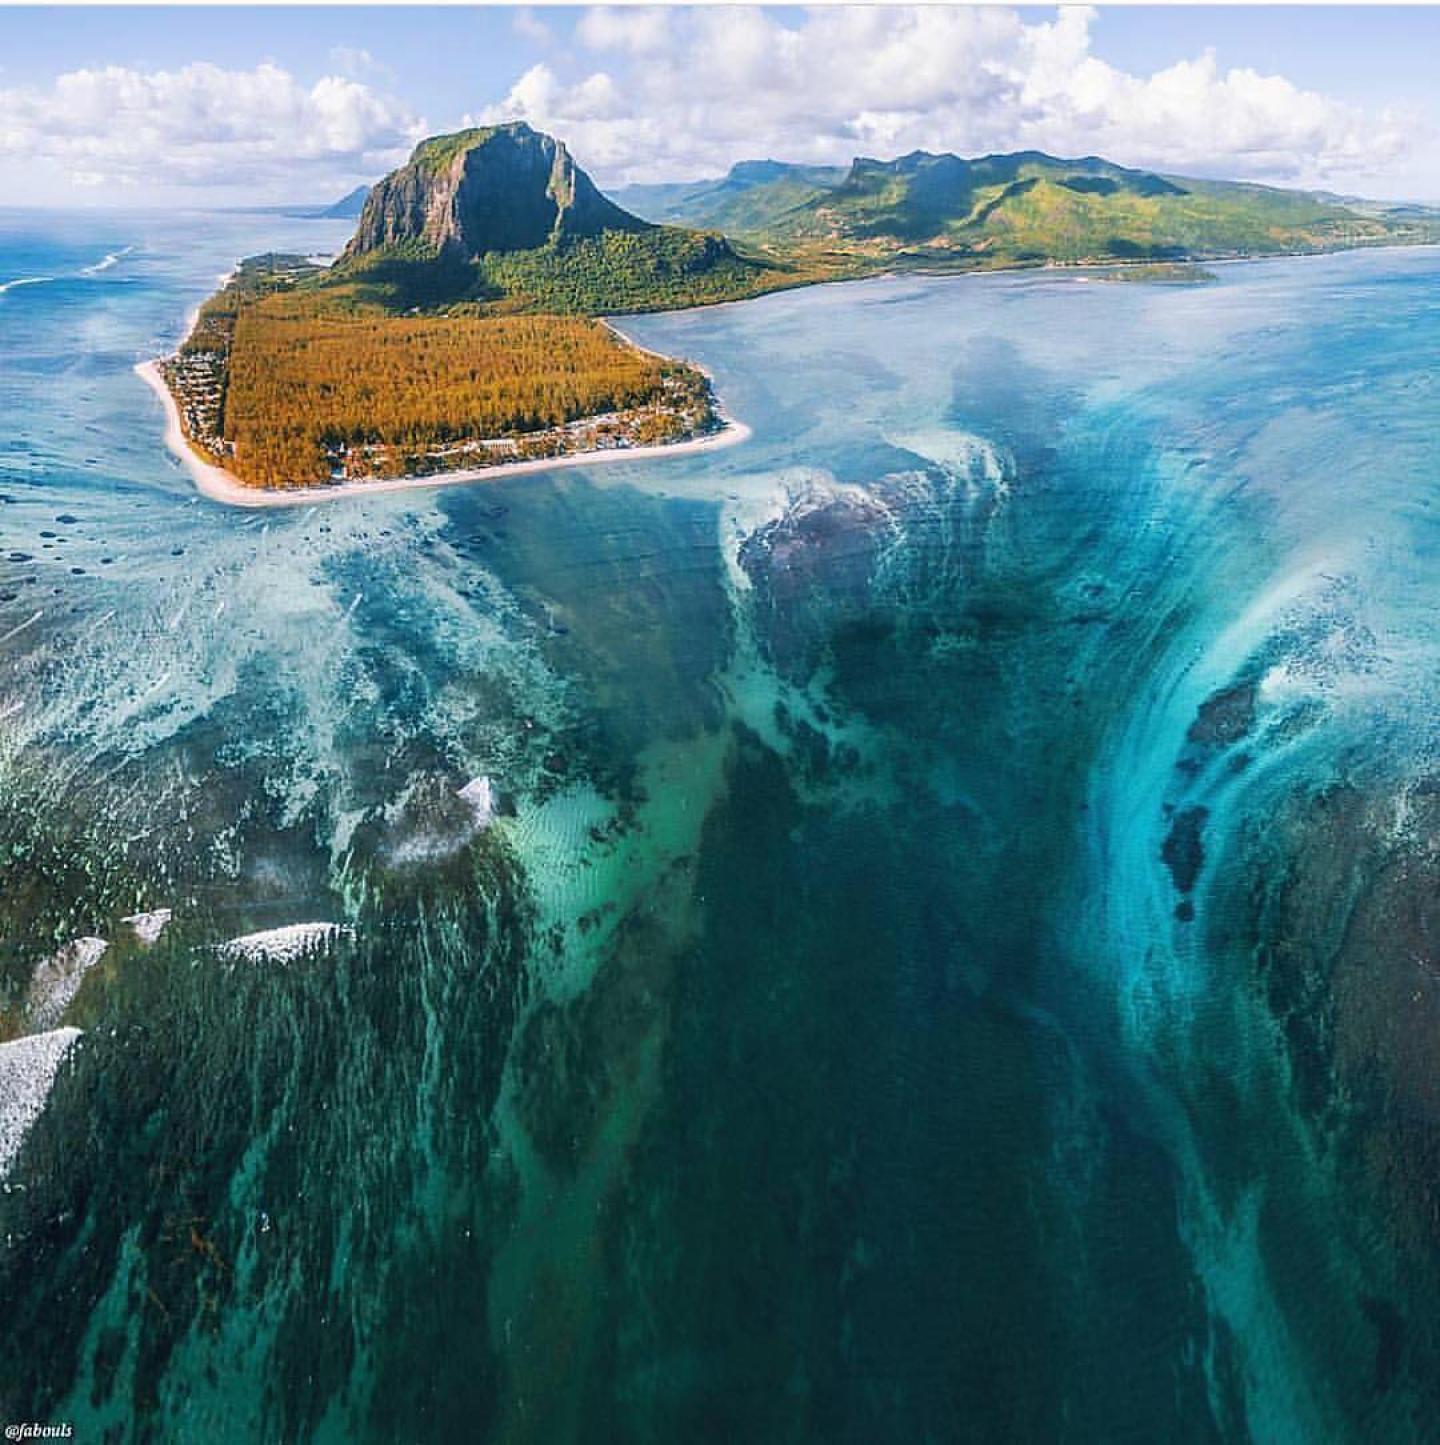 Mauritius' amazing underwater waterfall | amazing.zone